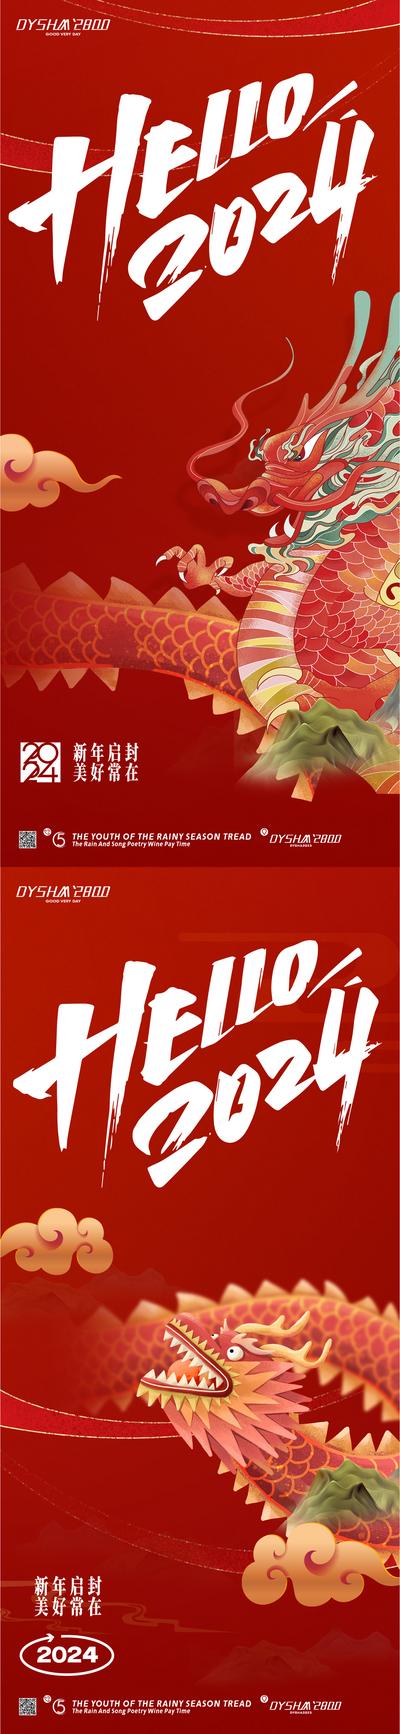 南门网 广告 海报 新年 元旦 春节 龙 2024 龙年 系列